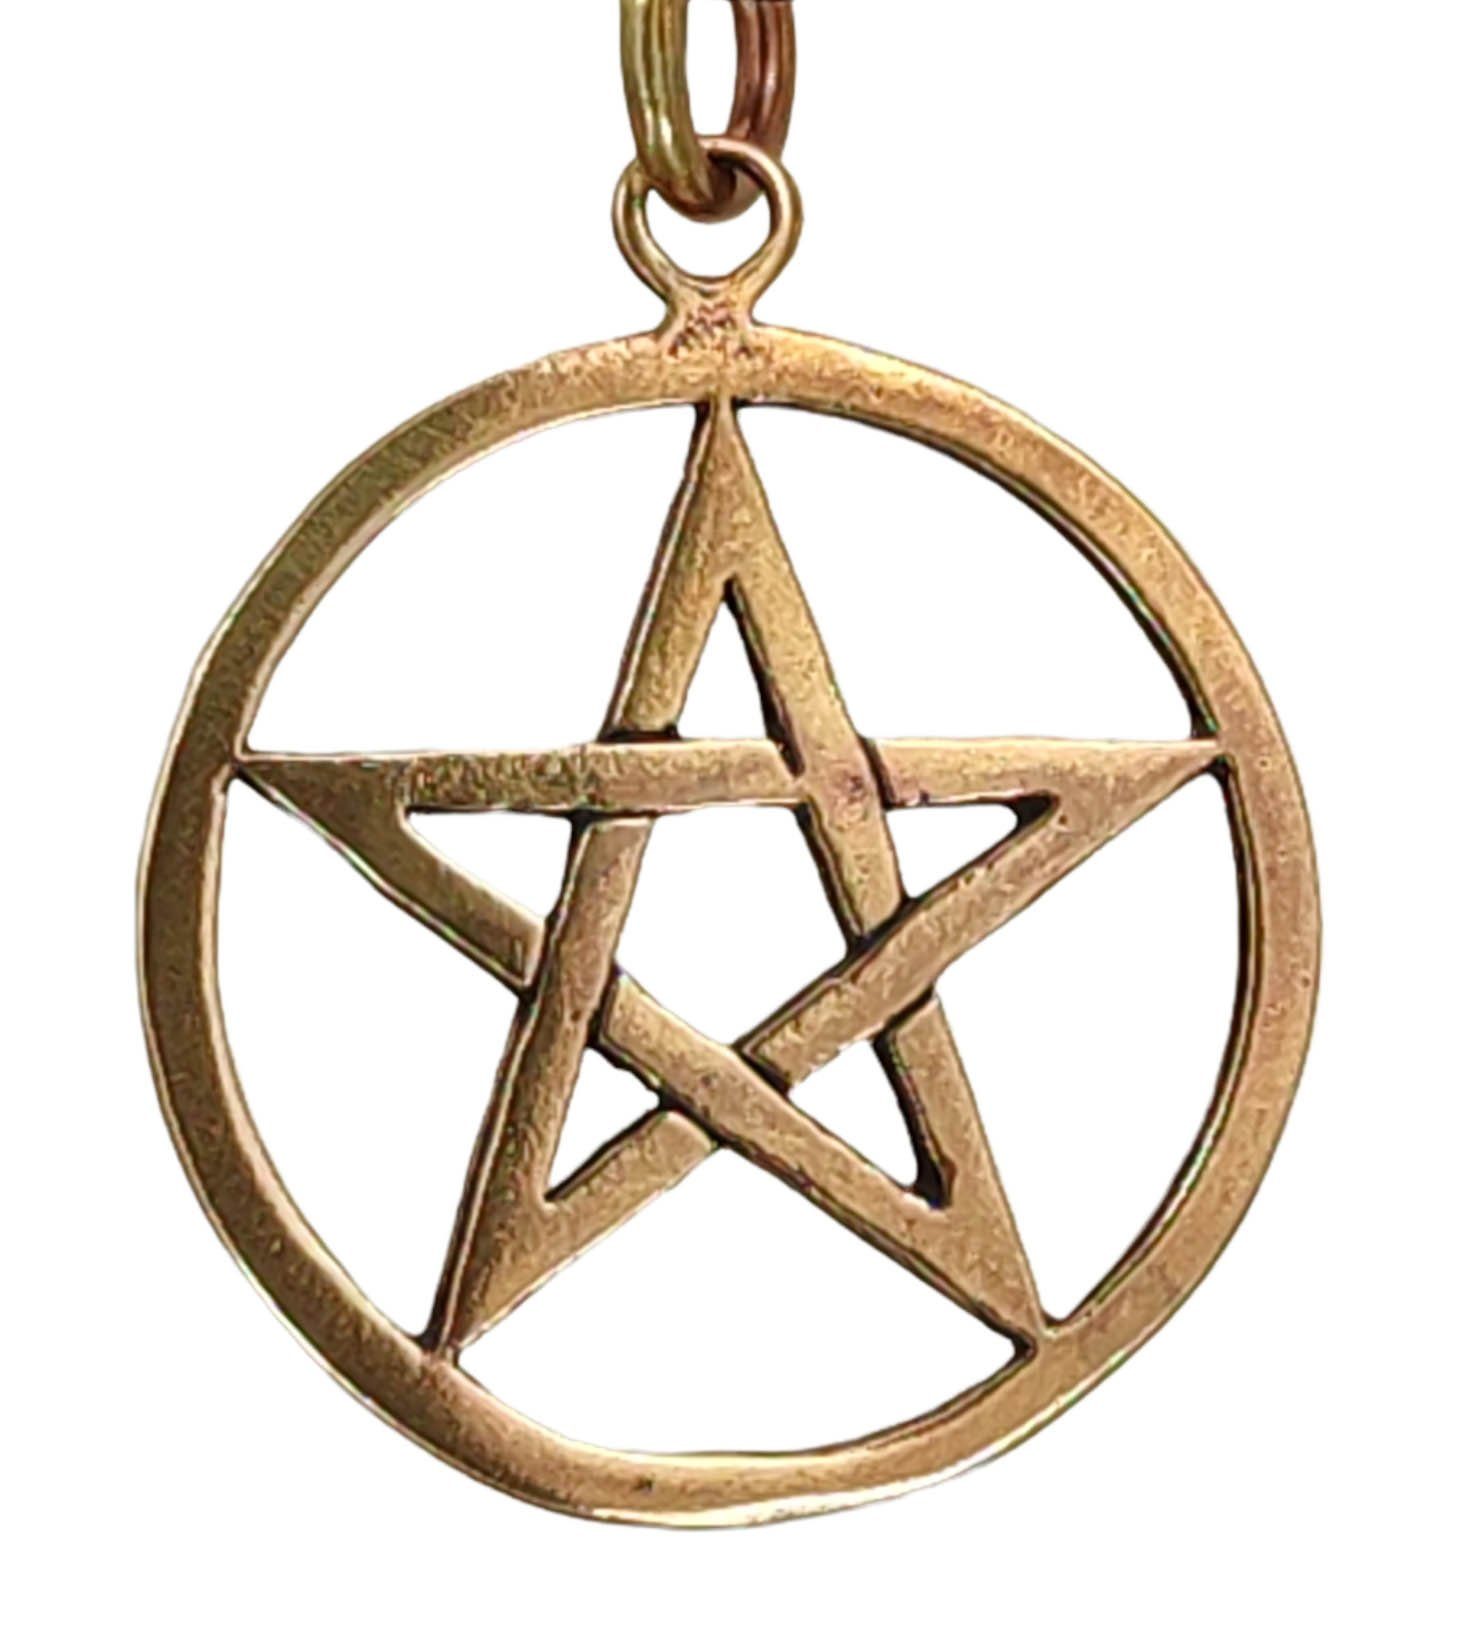 Hexe Zauber Kettenanhänger Magie Pentacle Pentagramm Pentagram of Anhänger weiße Kiss Leather Schutz Bronze